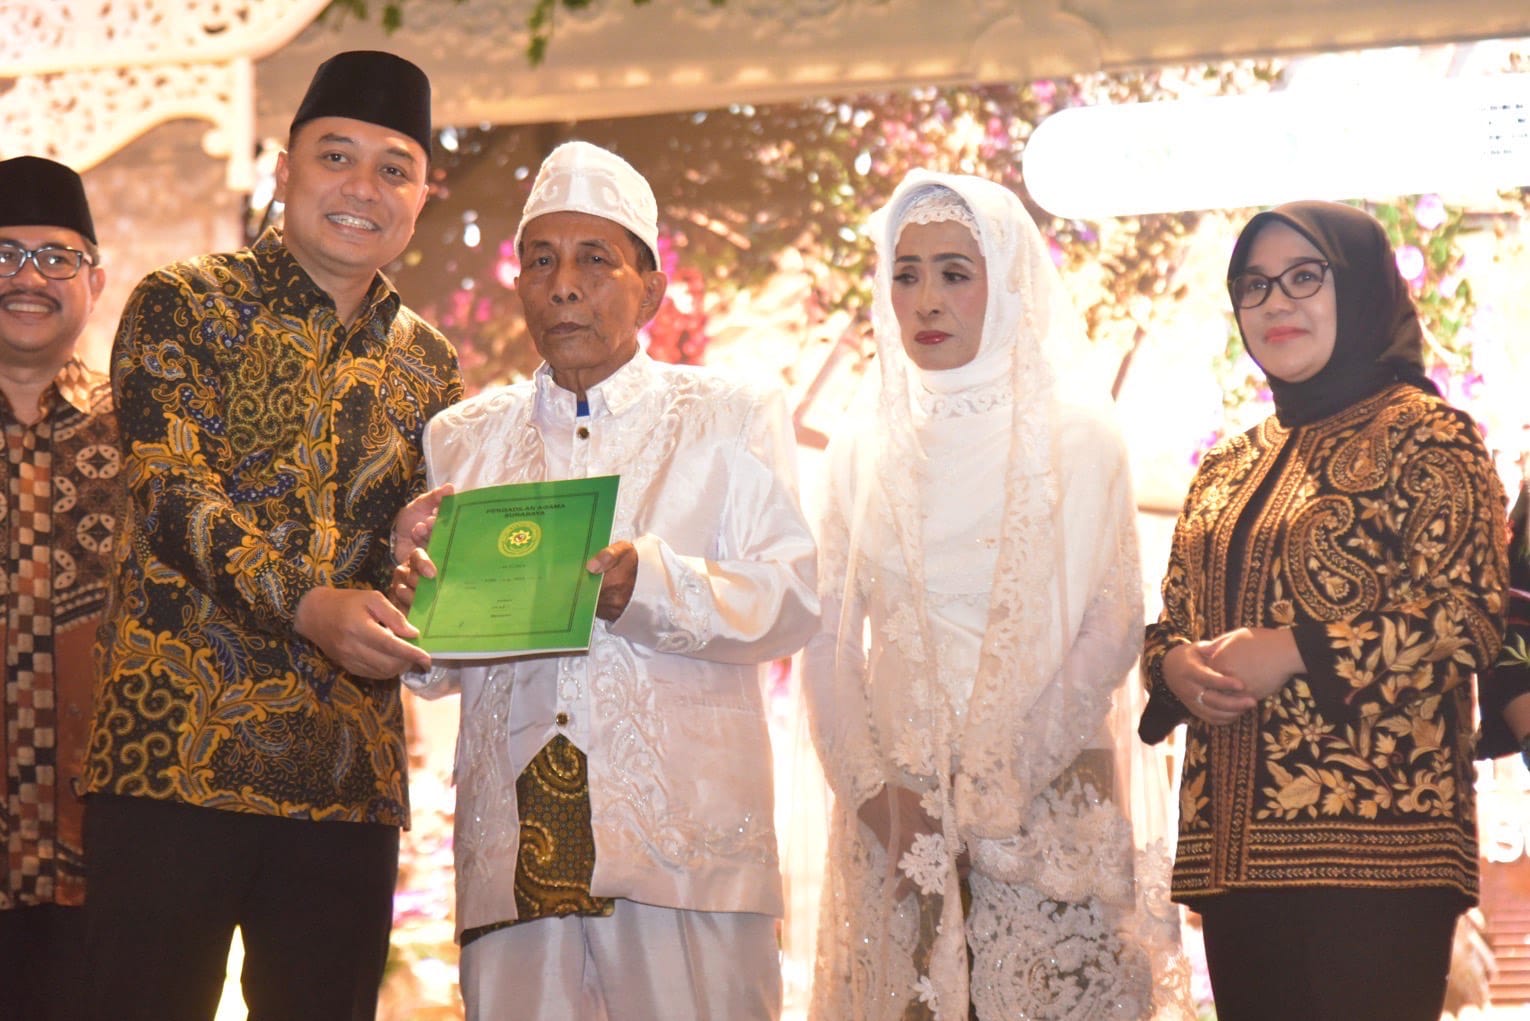 Resepsi Akbar Isbat Nikah Massal di Balai Kota Surabaya, 330 Pasangan Diresmikan Pernikahannya